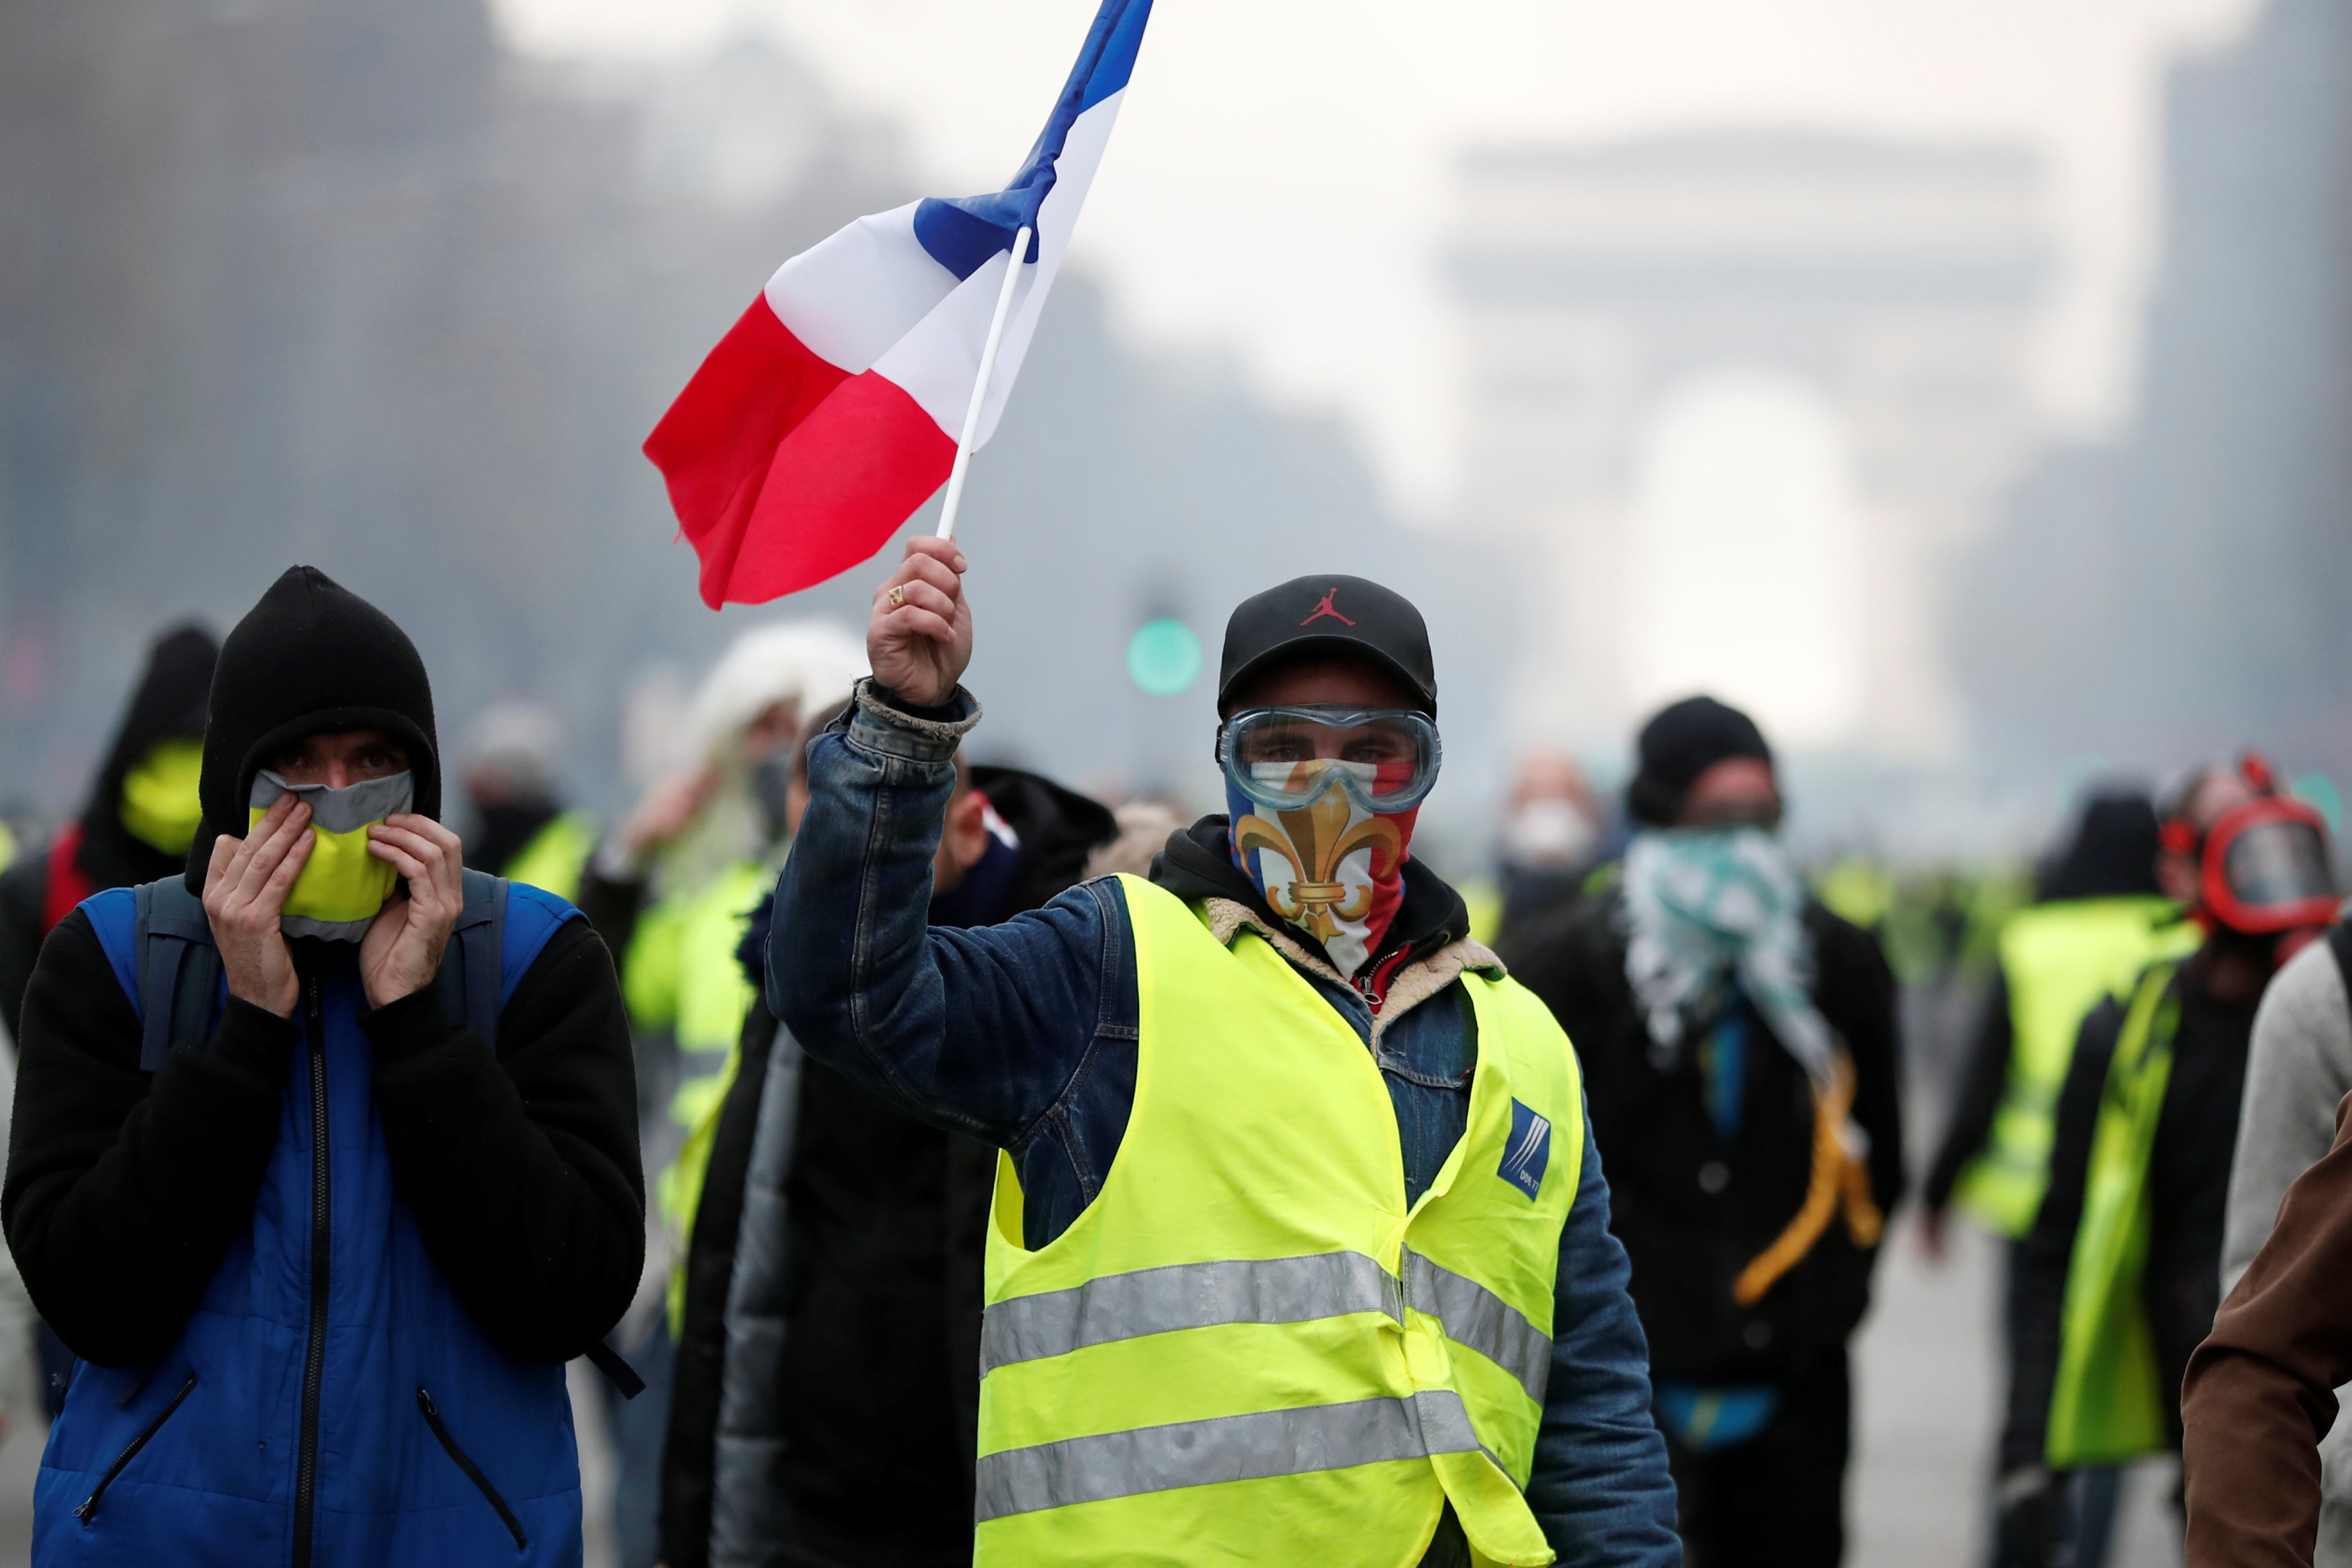 Le Pen reitera su apoyo a ‘chalecos amarillos’ tras disturbios en París